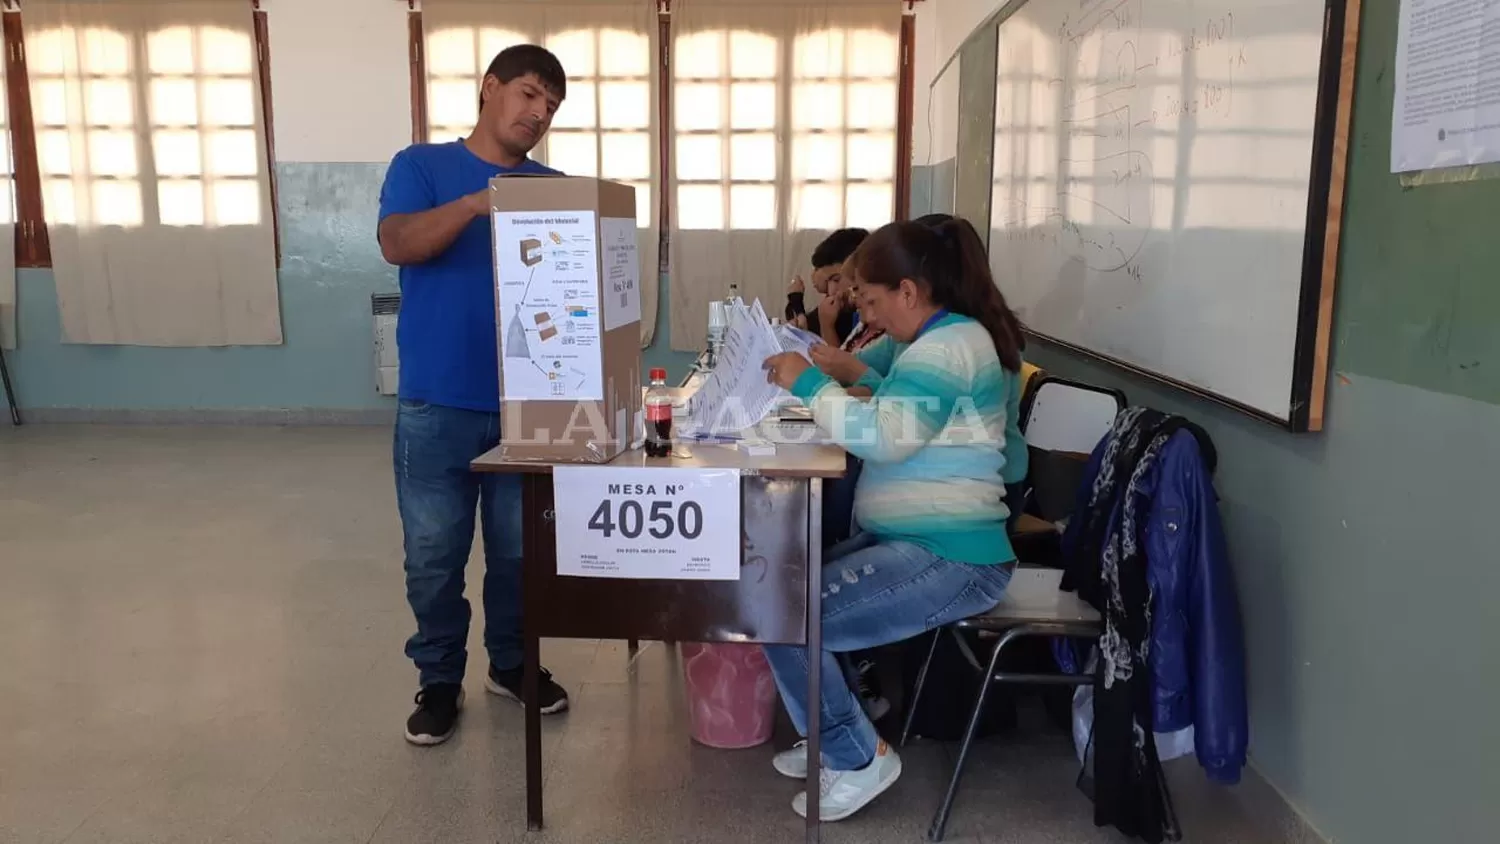 El Frente de Todos denuncia irregularidades en las elecciones provinciales de Salta